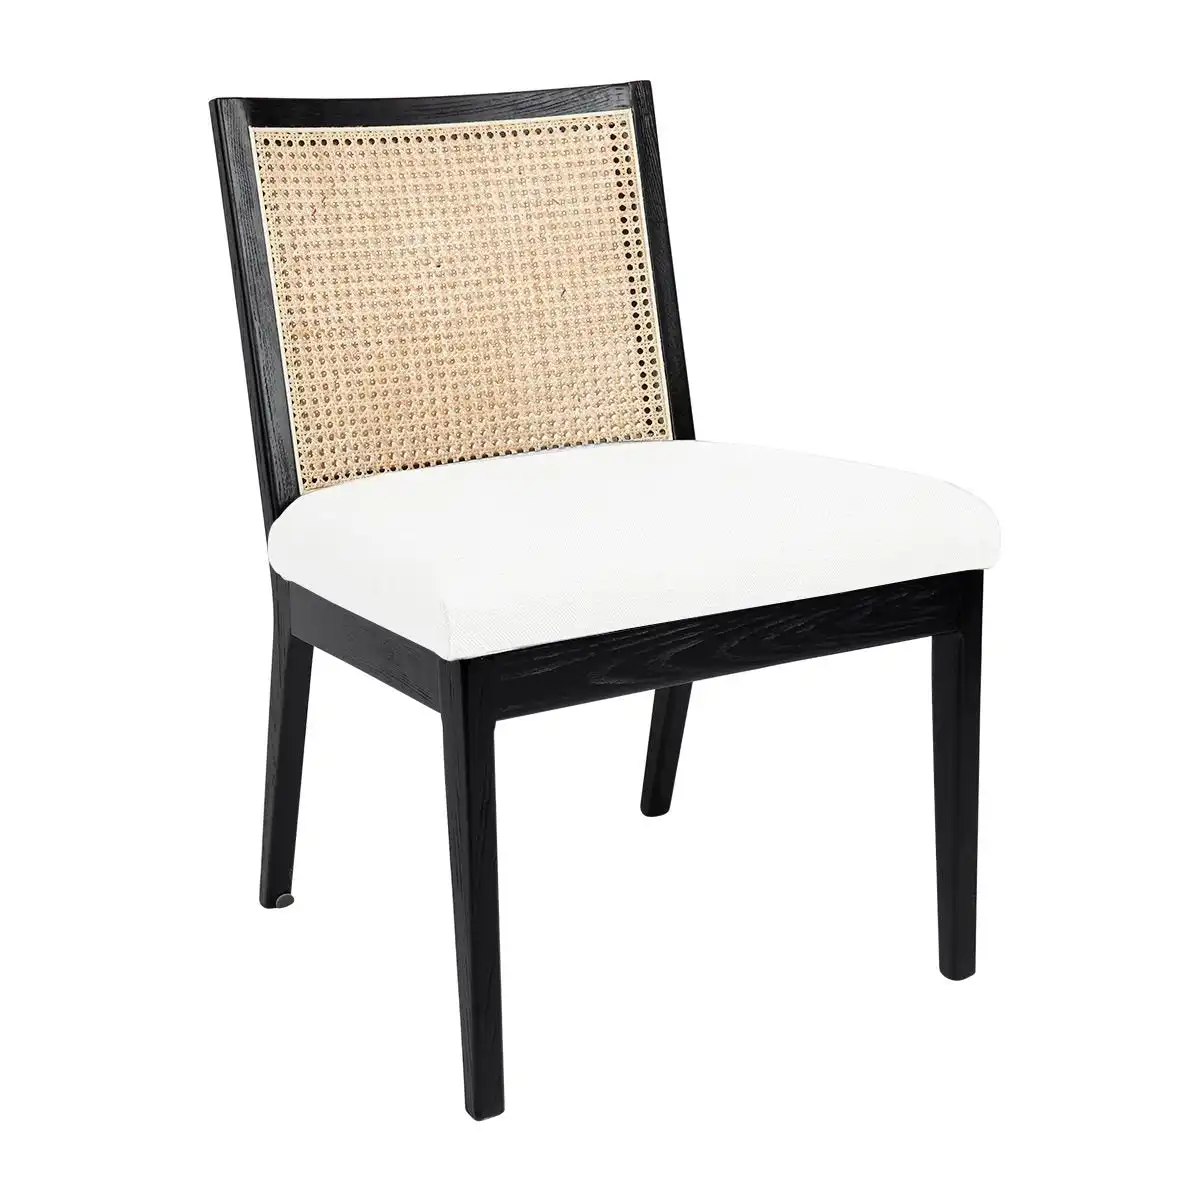 Kane Black Rattan Dining Chair - White Linen